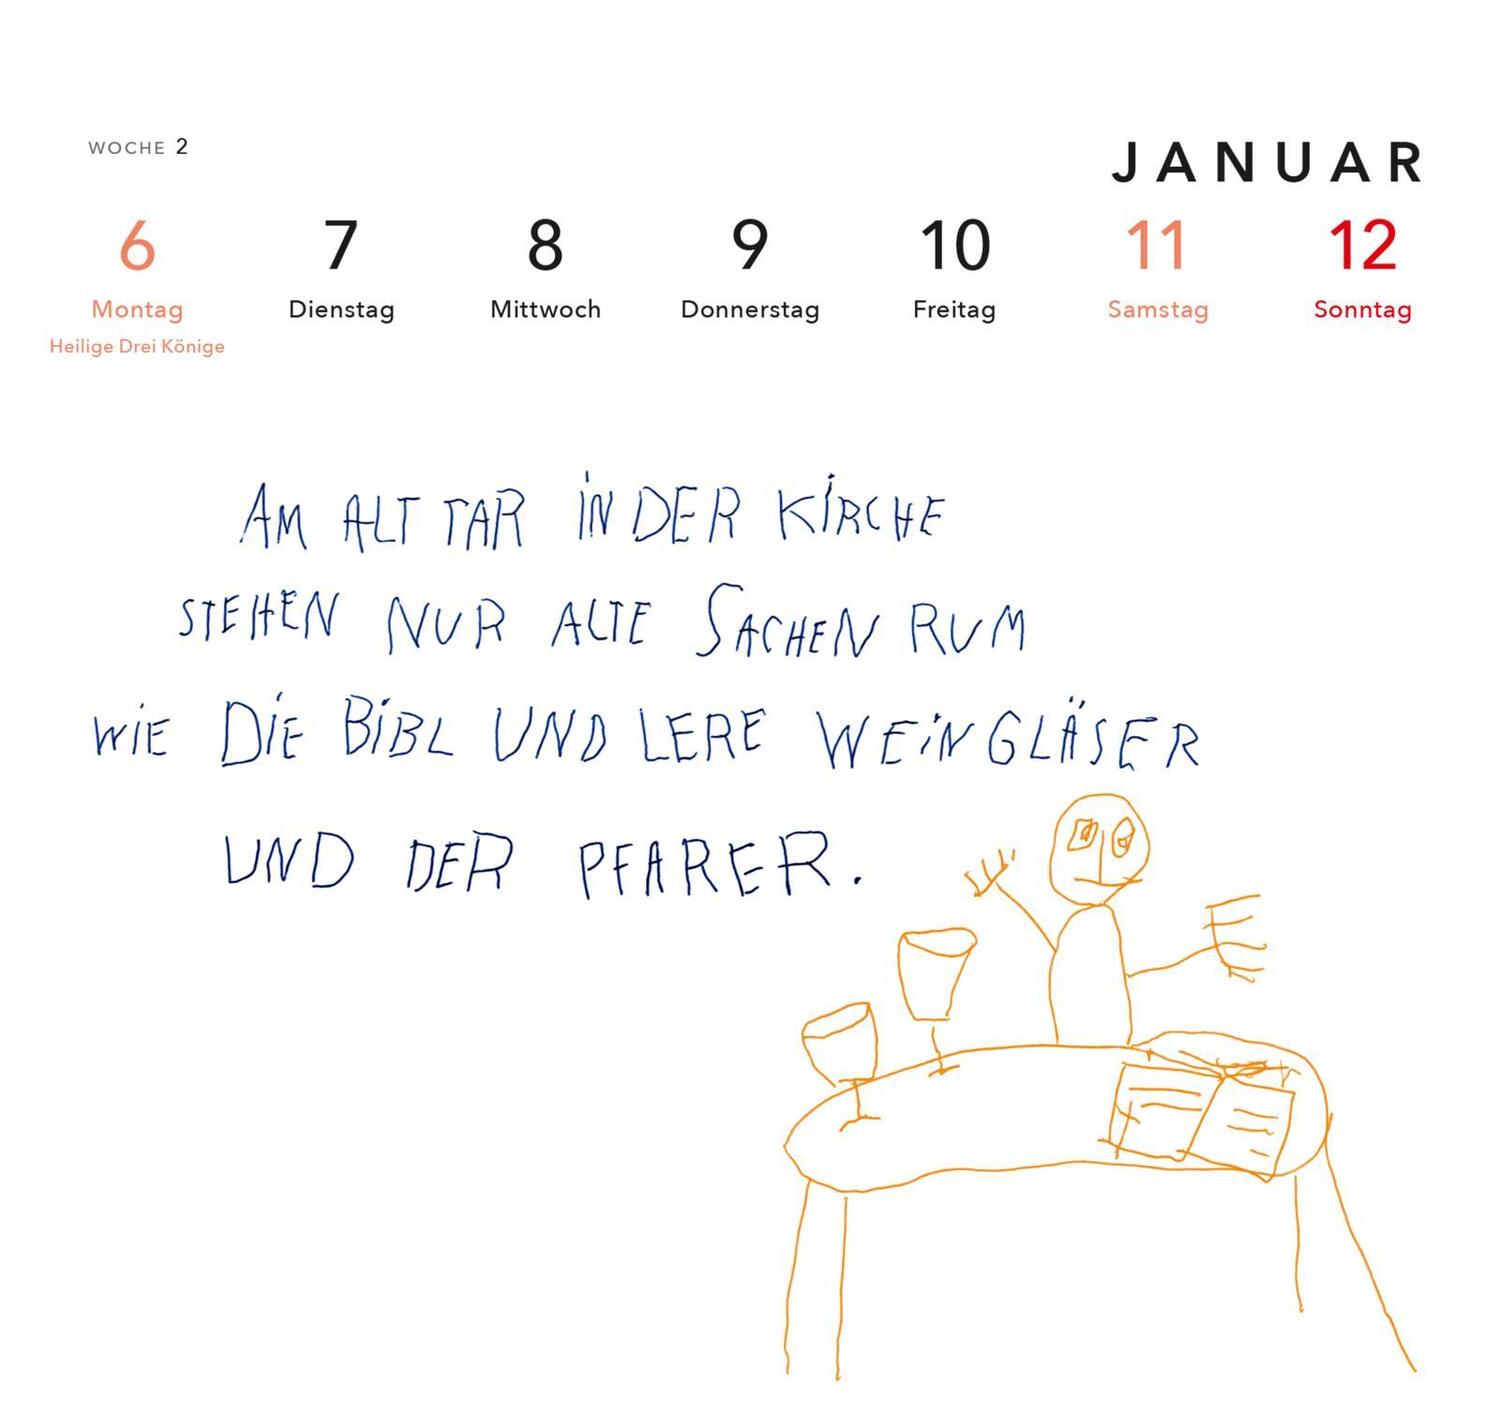 Bild: 9783830321200 | Der Hummel ihr Mann heist Hummer - Postkartenkalender 2025 | Ronge